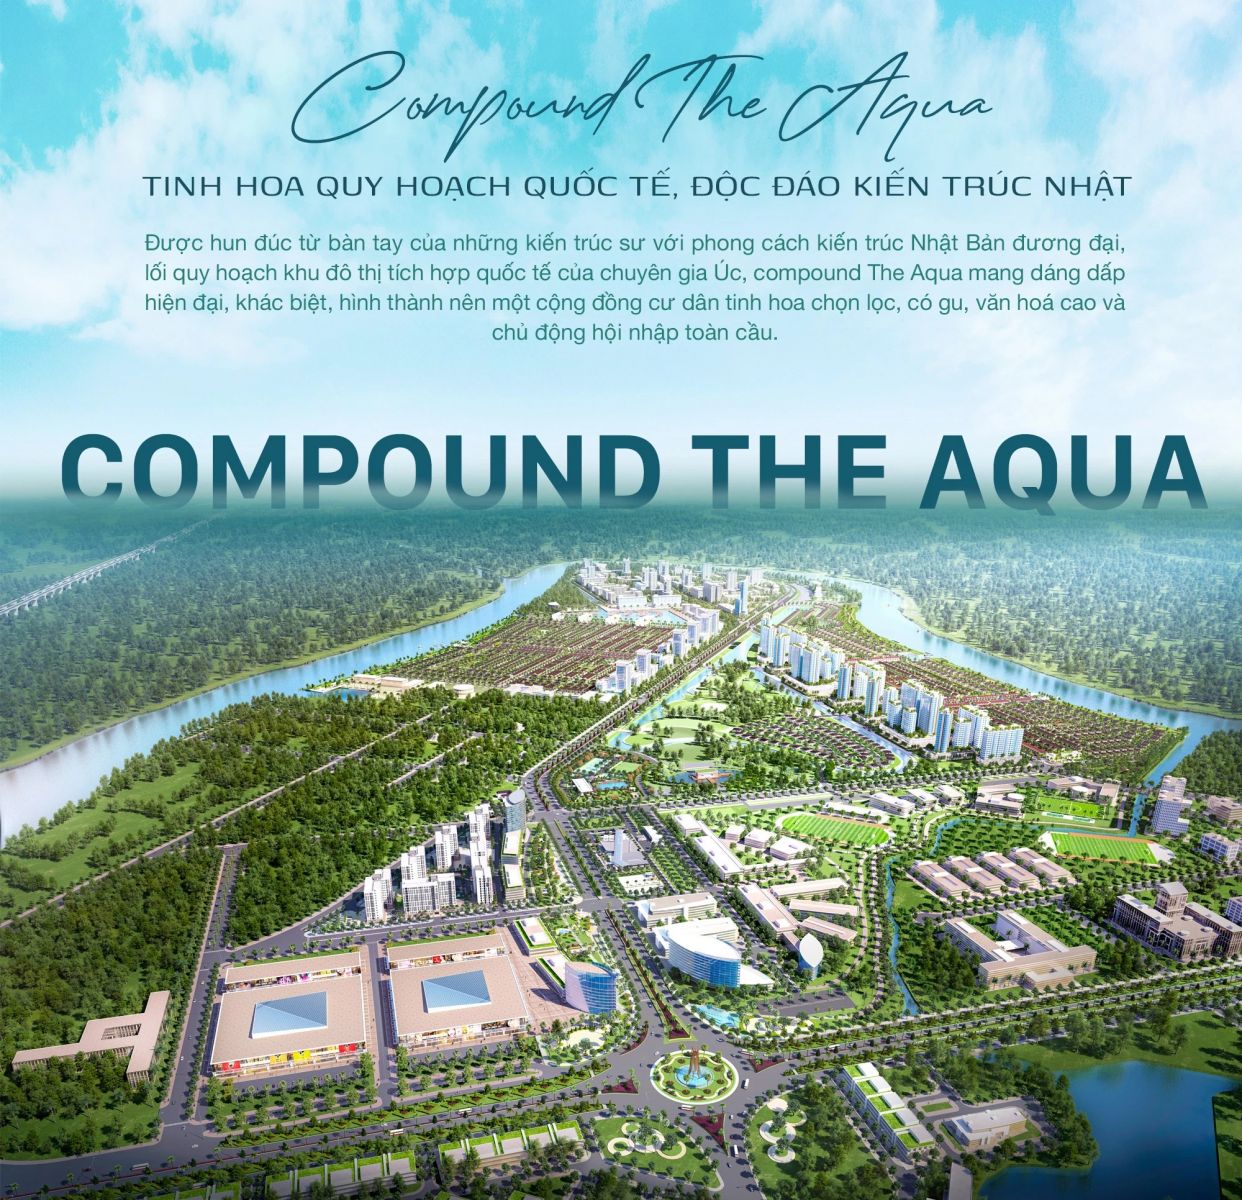 Compound The Aqua: Tinh hoa quy hoạch quốc tế, độc đáo kiến trúc Nhật